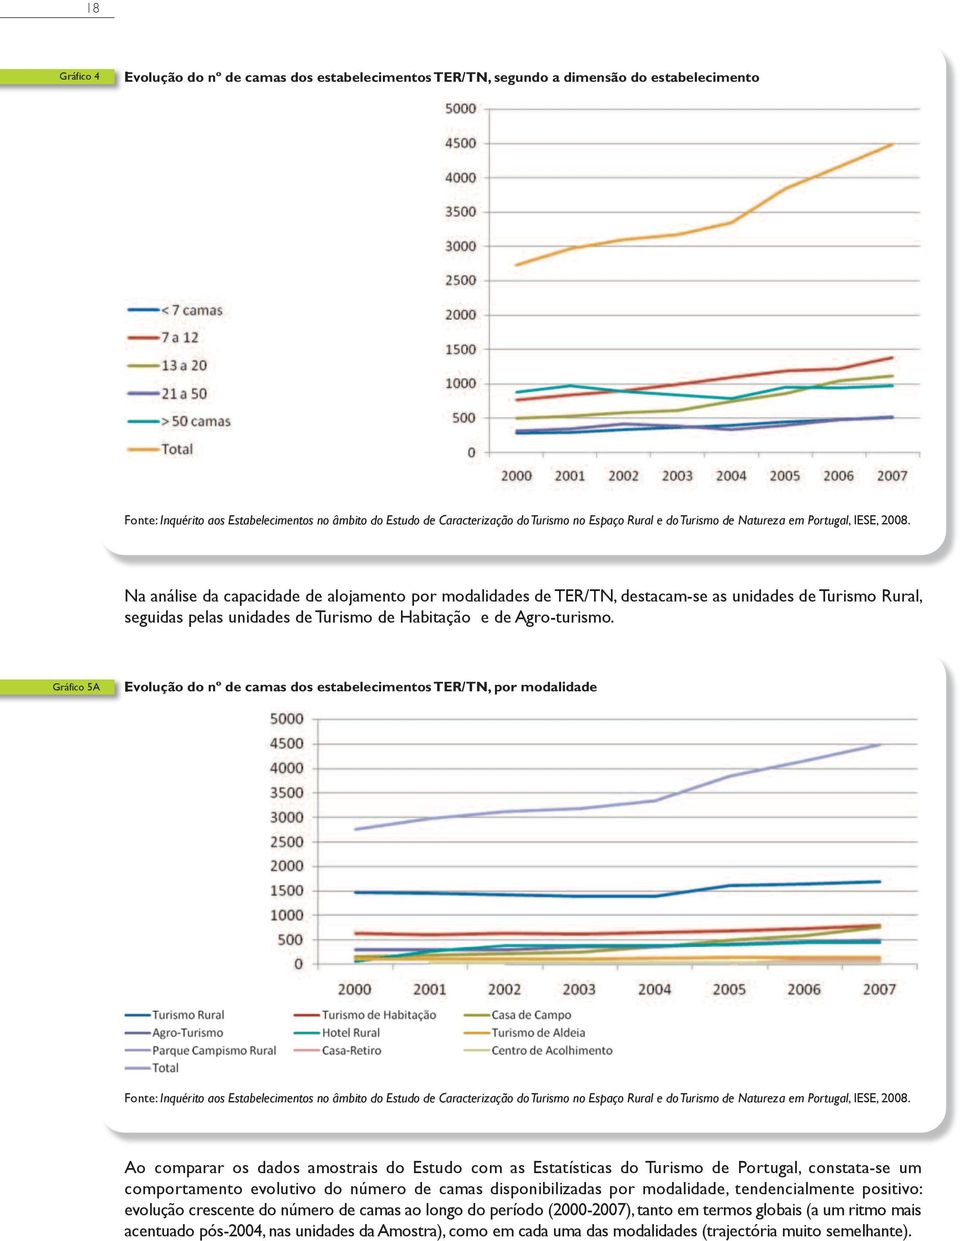 Gráfico 5a Evolução do nº de camas dos estabelecimentos TER/TN, por modalidade ao comparar os dados amostrais do estudo com as estatísticas do turismo de Portugal, constata-se um comportamento